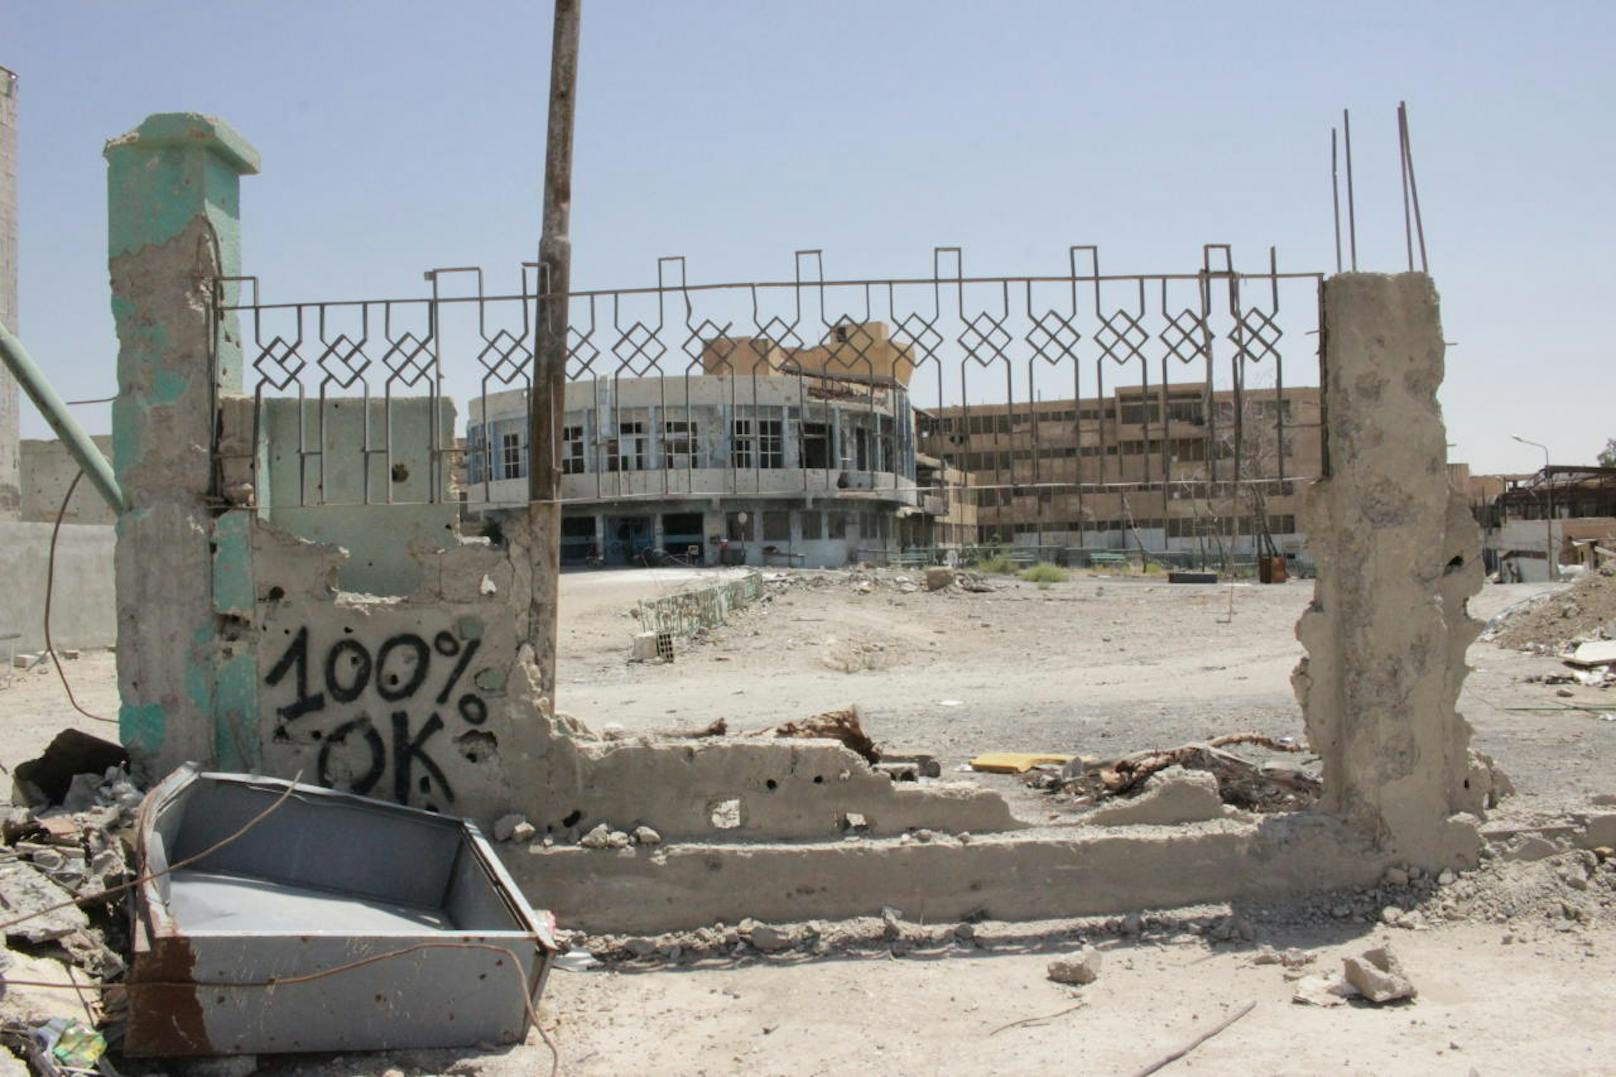 Der Wiederaufbau der Stadt geht langsam voran. Alle Hauptstraßen und jene öffentlichen Gebäude, die noch stehen, sind von Sprengfallen und Minen geräumt (im Bild das Spital von Raqqa): 100% OK heißt, dass das Areal sicher ist.